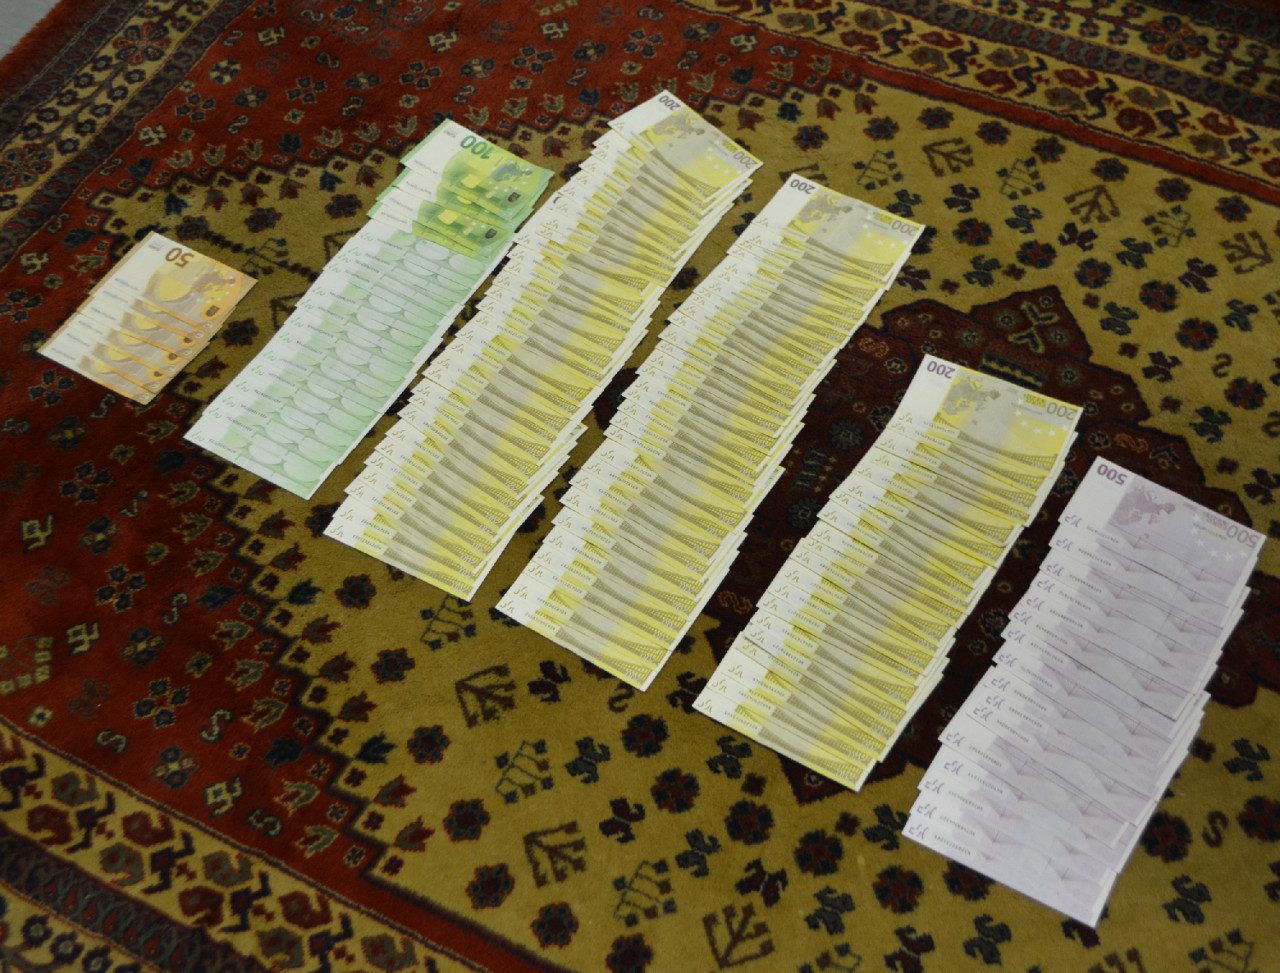 Hálapénz elfogadása miatt őrizetbe vett orvosnál talált pénz (Fotó: Police.hu)